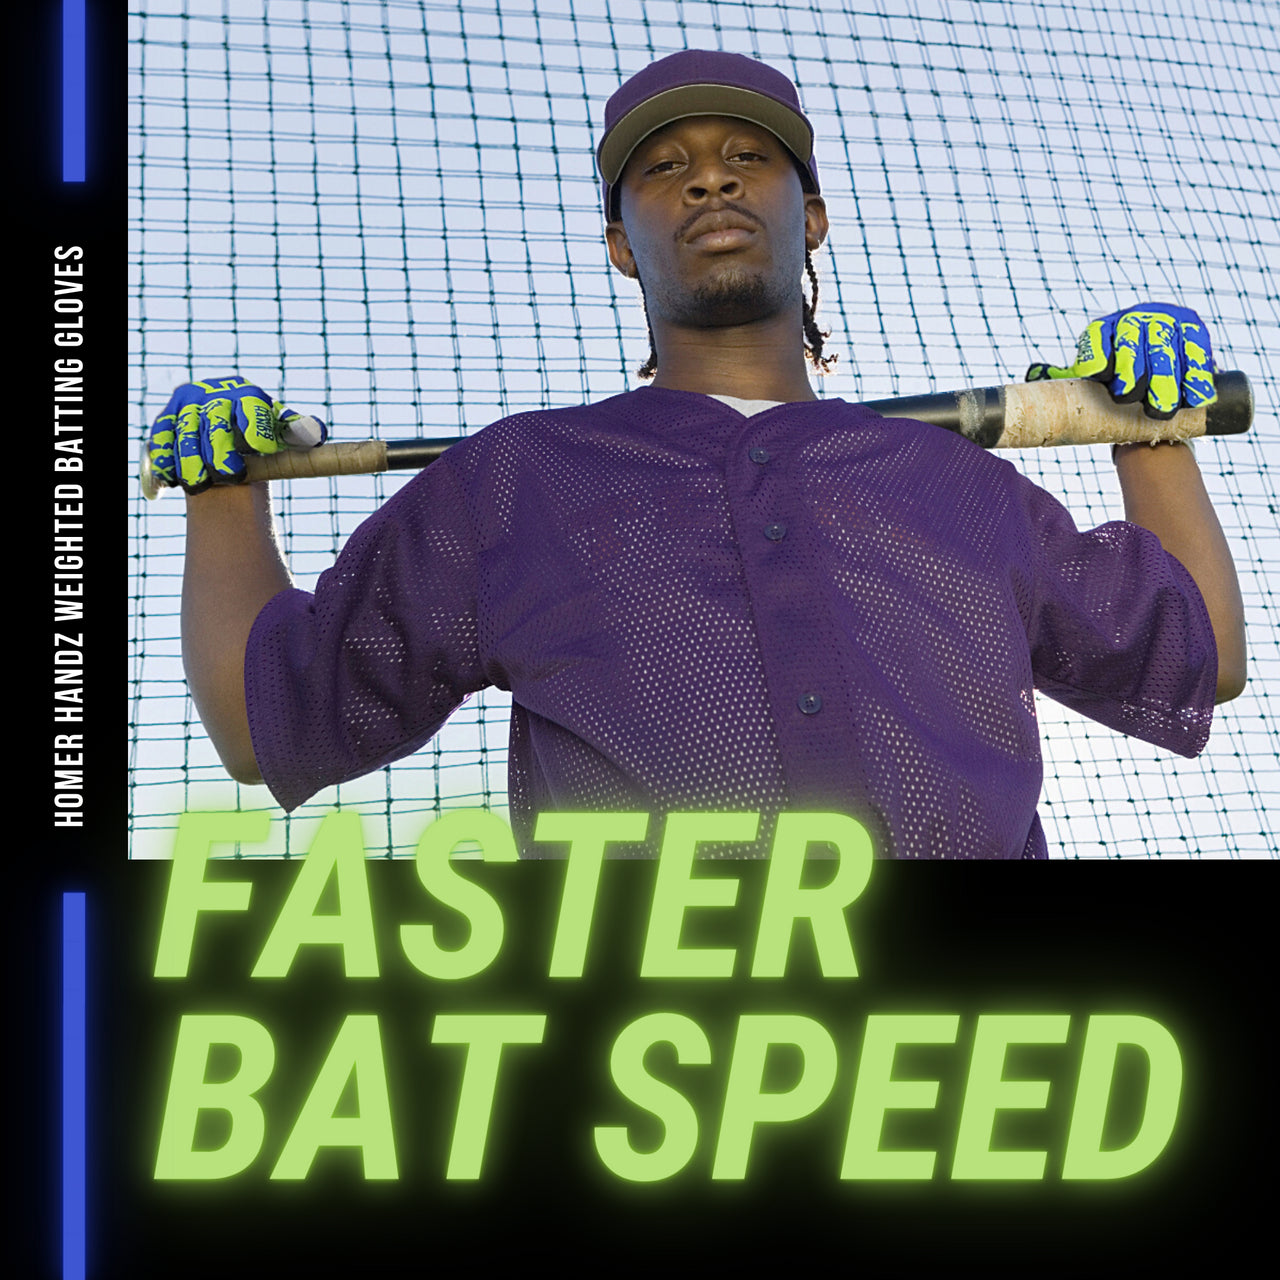 Homer Handz Weighted Batting Gloves Increase Bat Speed